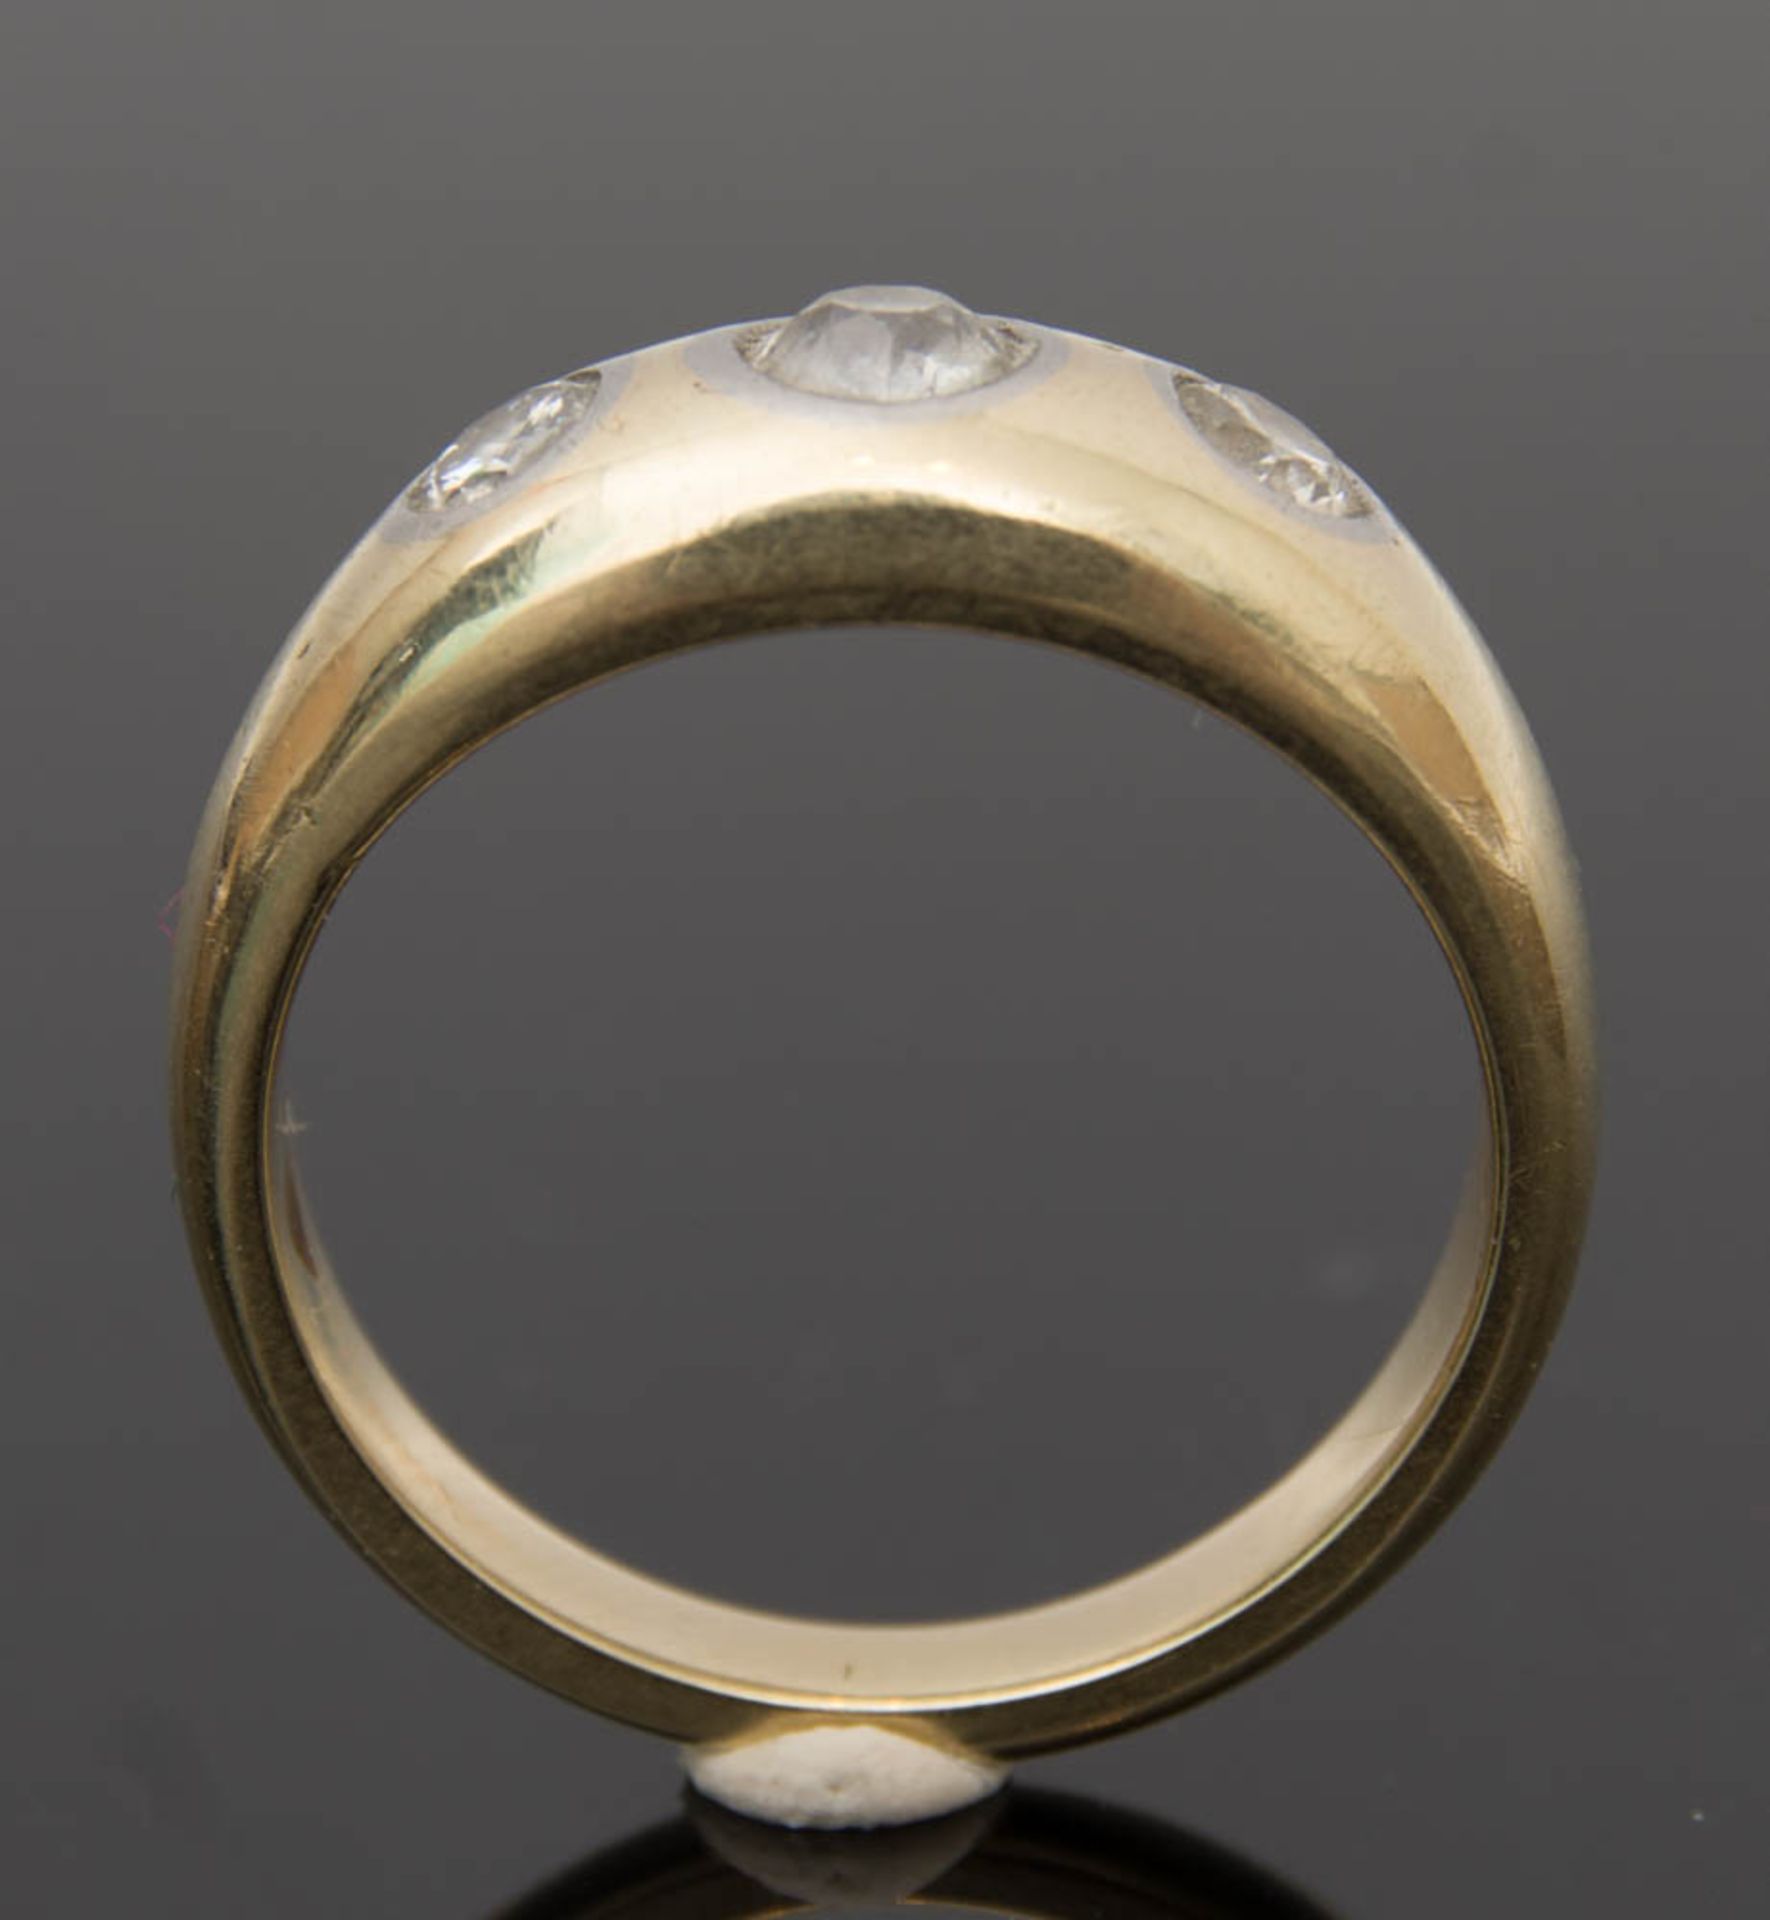 GOLDRING MIT 3 STEINEN, 585er Gold, 20. Jh.Ring aus 585er Gold mit 3 Moissaniten, 7,9 g, 1,8 cm D. - Bild 2 aus 4